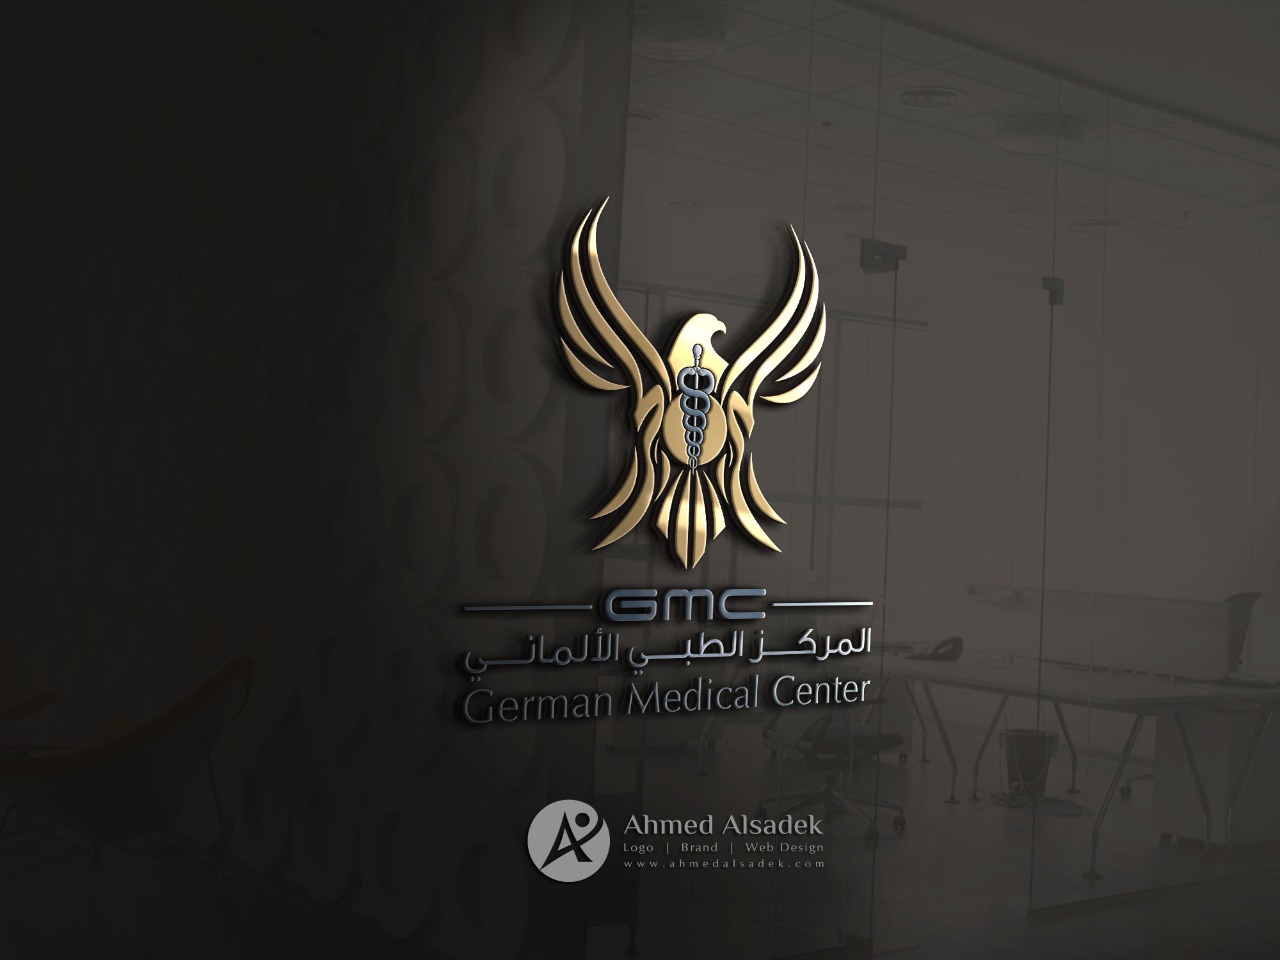 تصميم شعار المركز الطبي الالماني في مسقط سلطنة عمان 3